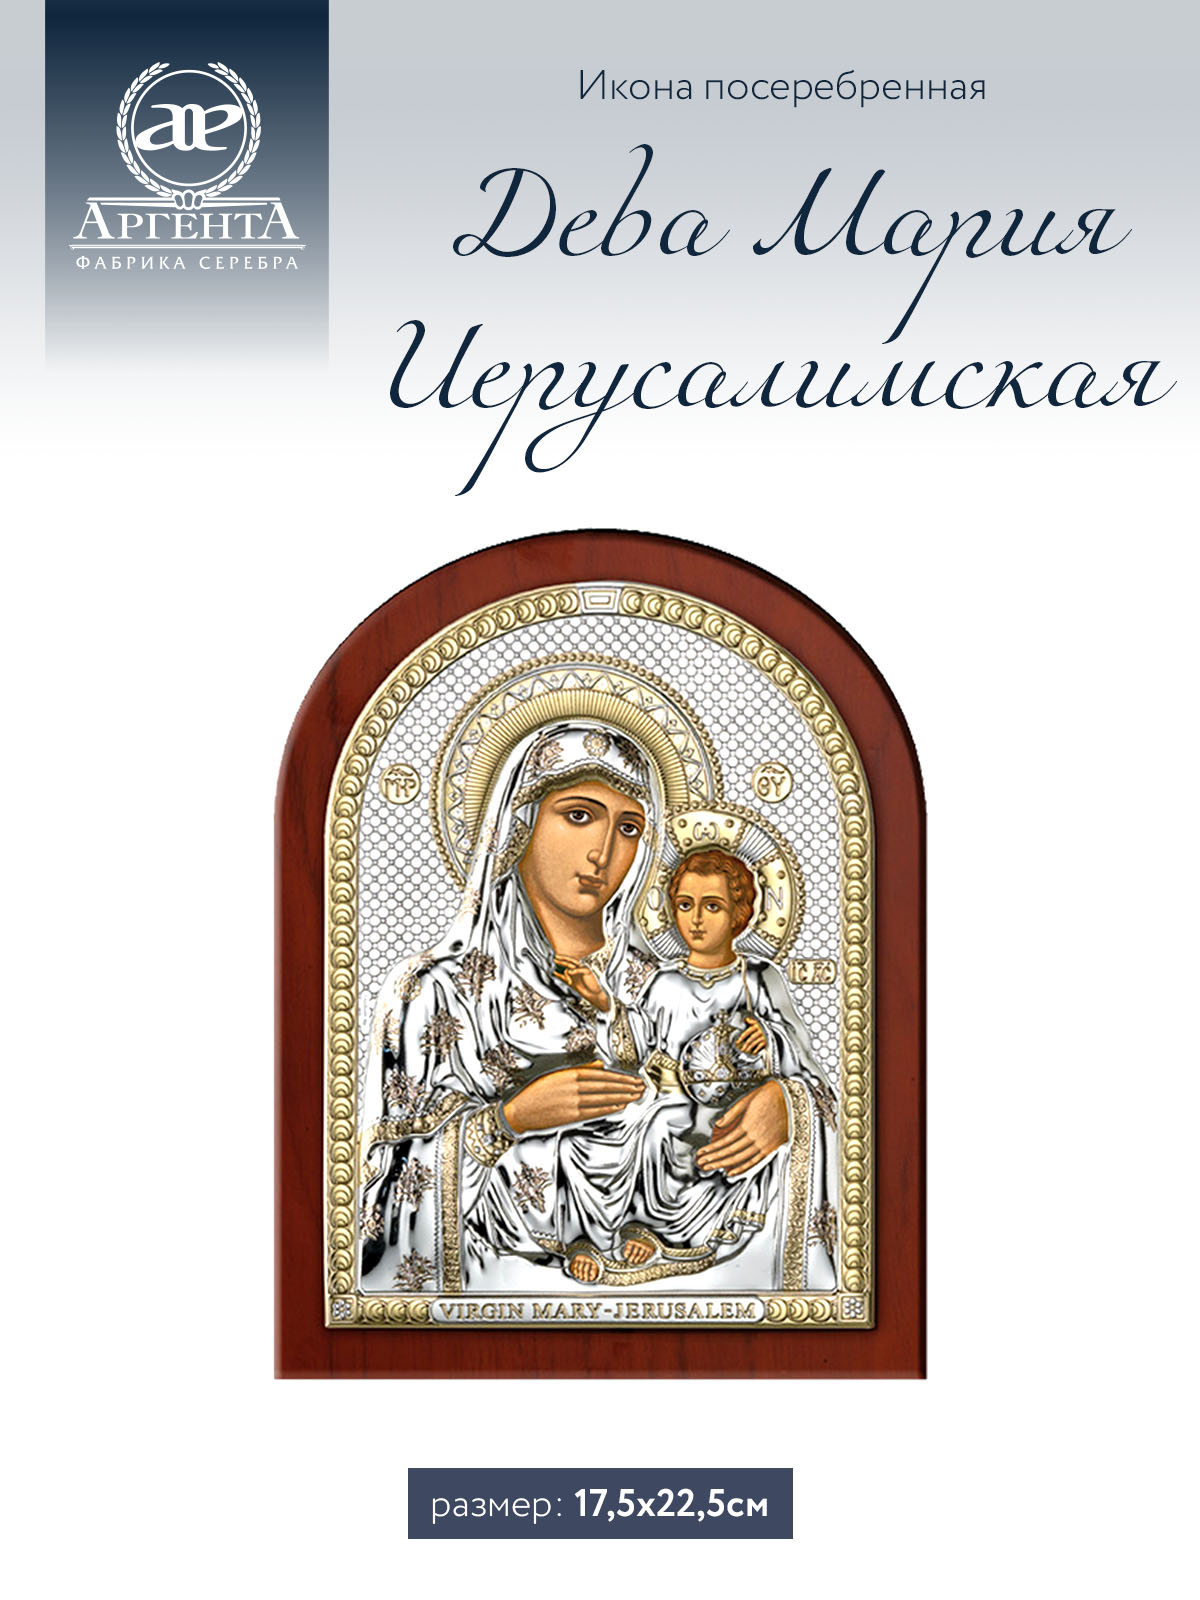 Икона Аргента Дева Мария Иерусалимская 17,5*22,5